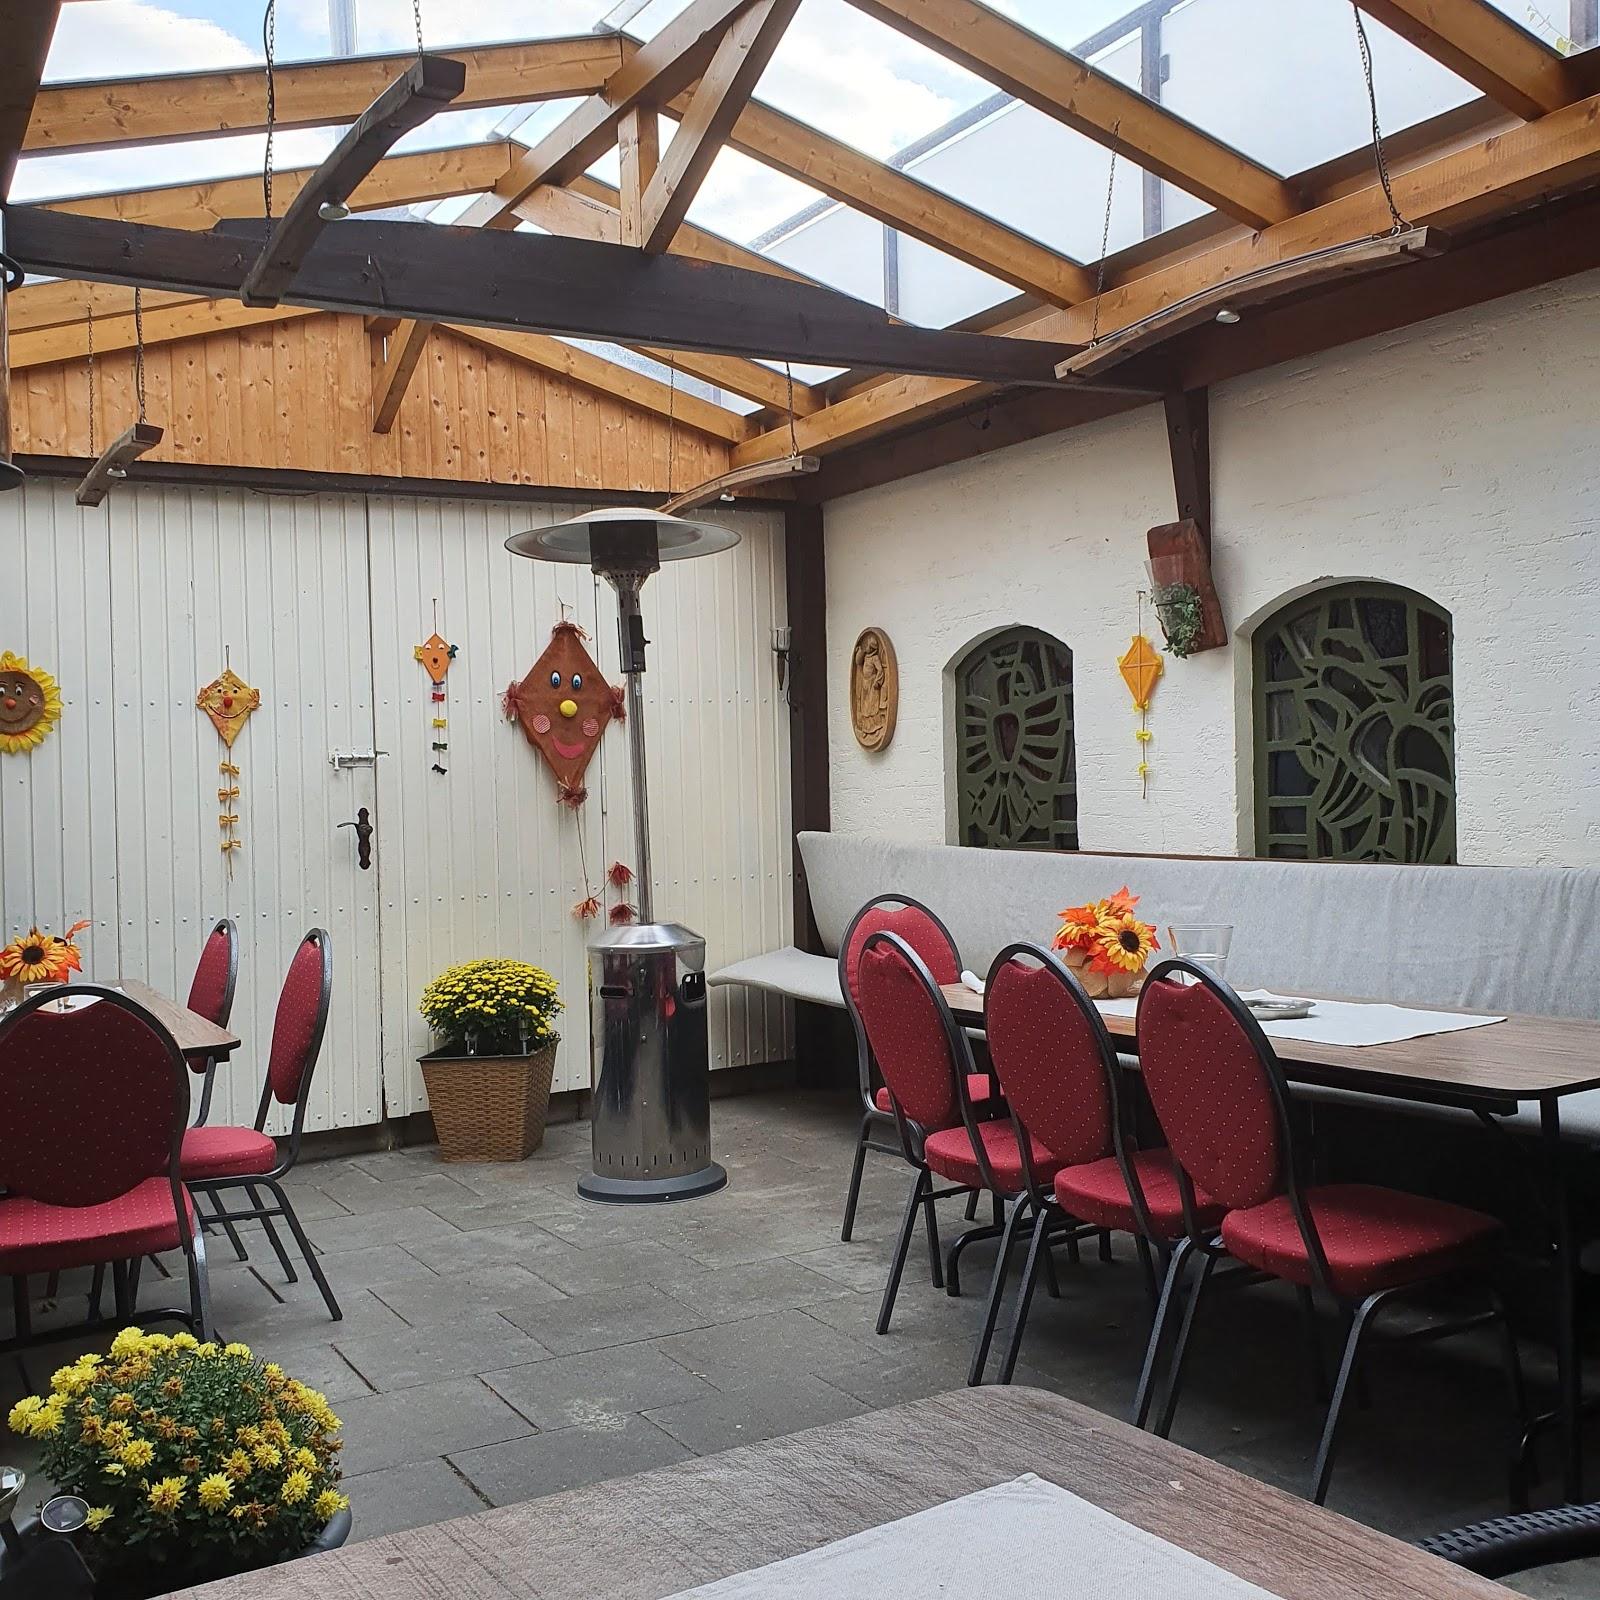 Restaurant "Weingut Klosterhof Gilles" in  Dernau